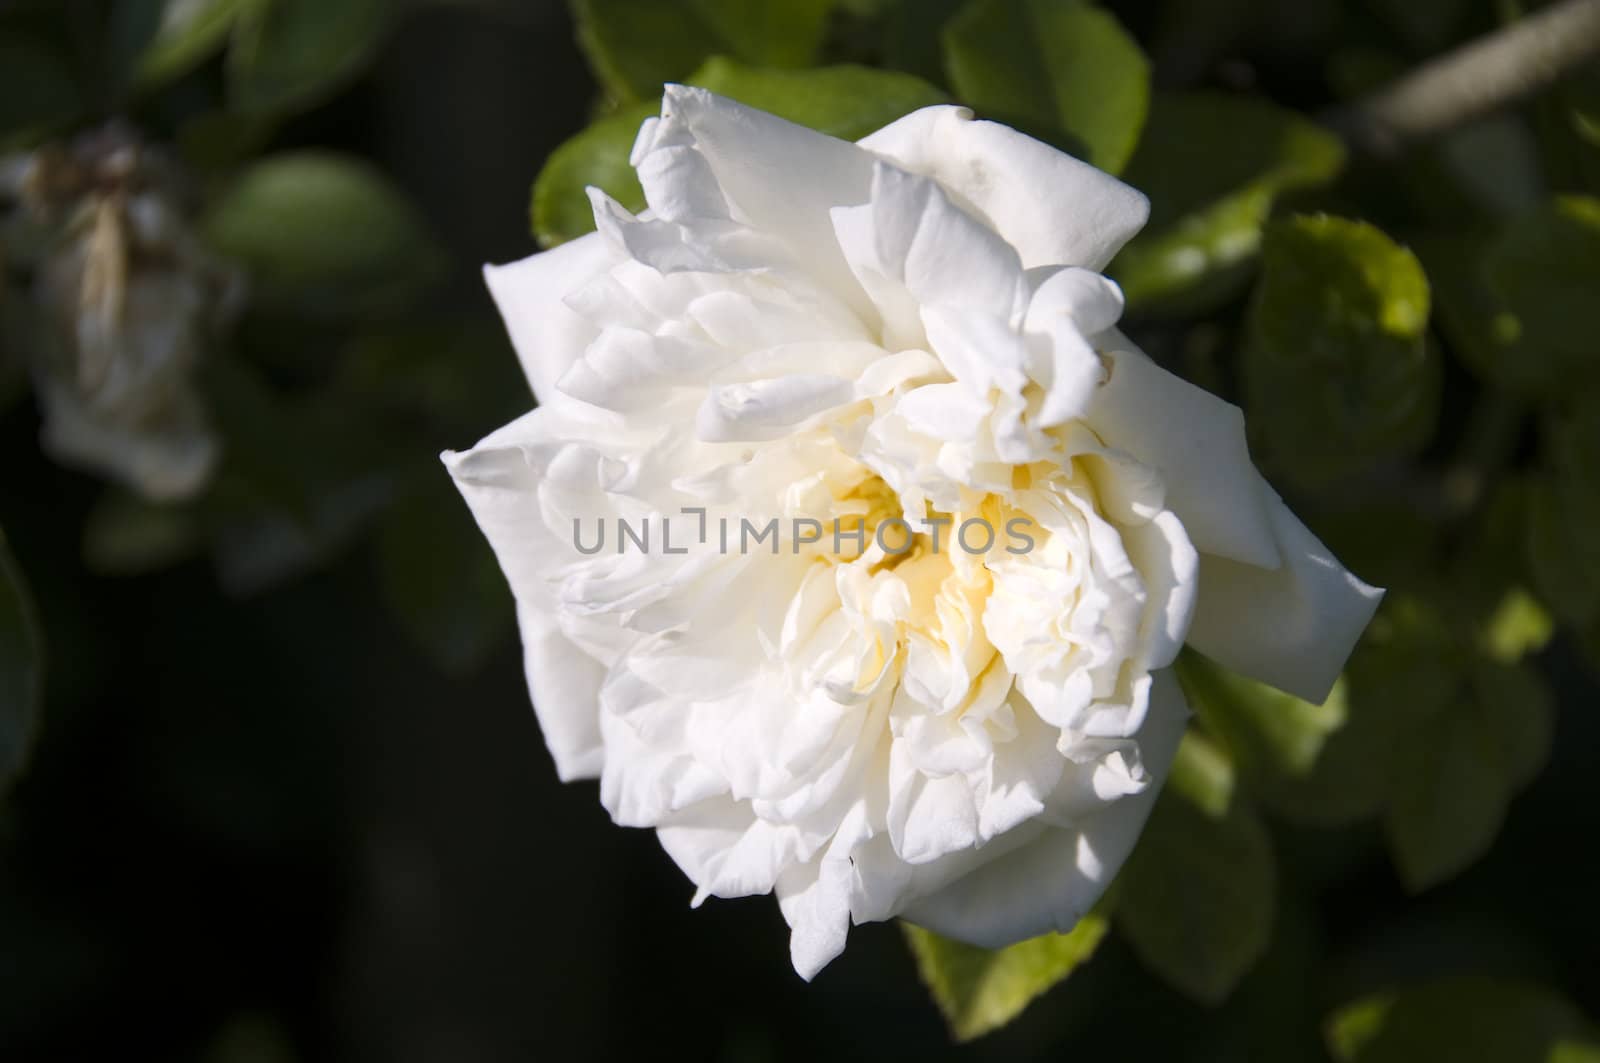 White Rose by mbtaichi